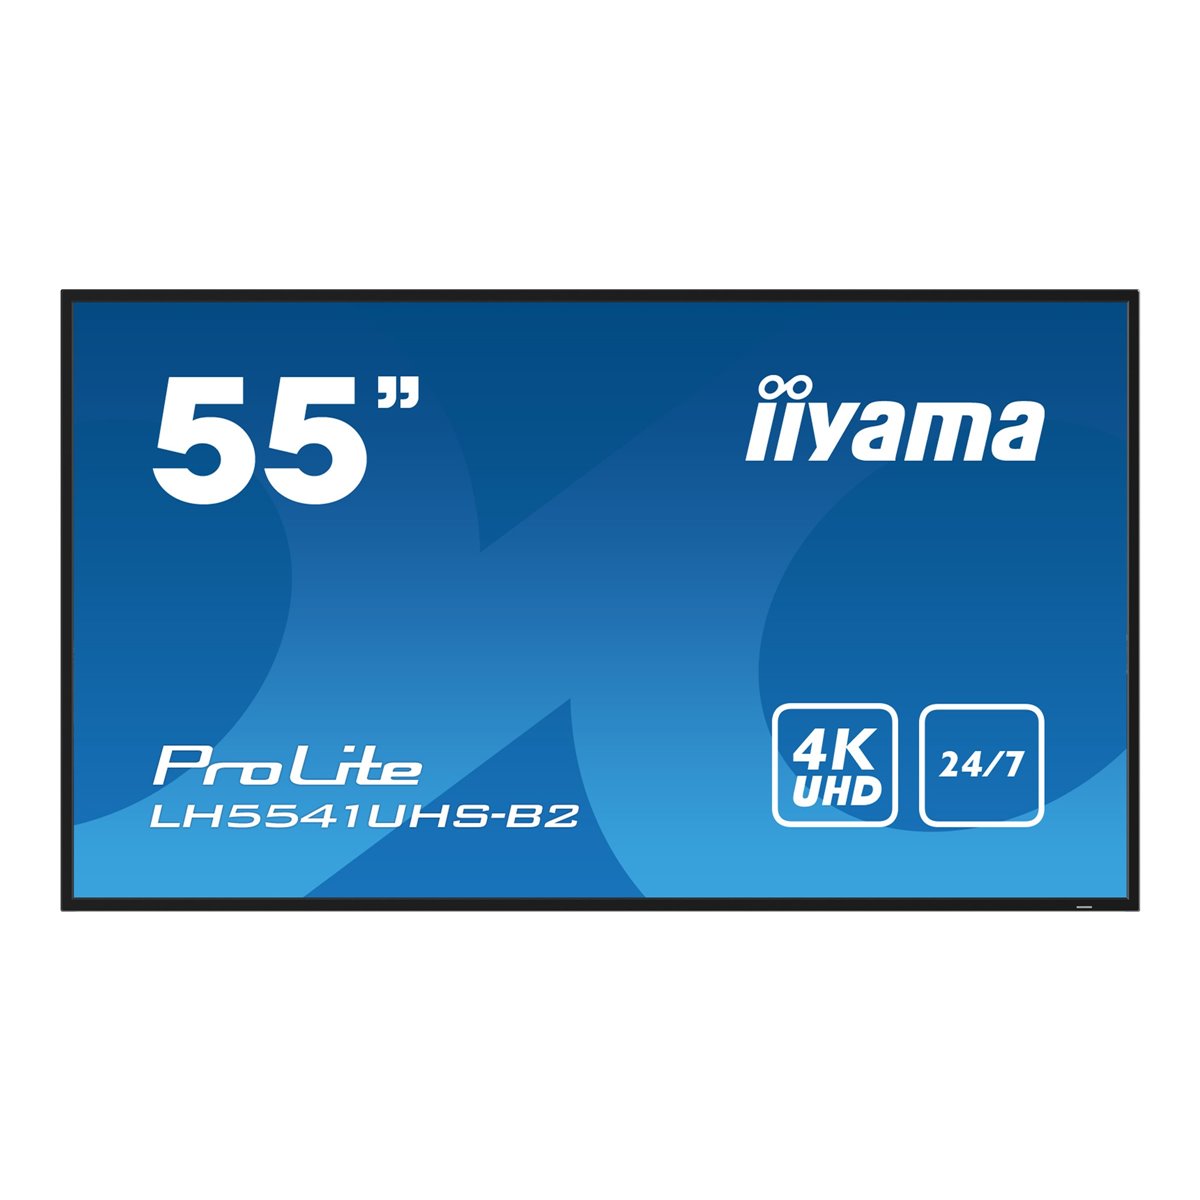 Iiyama 55iW LCD 4K UHD IPS - Flat Screen